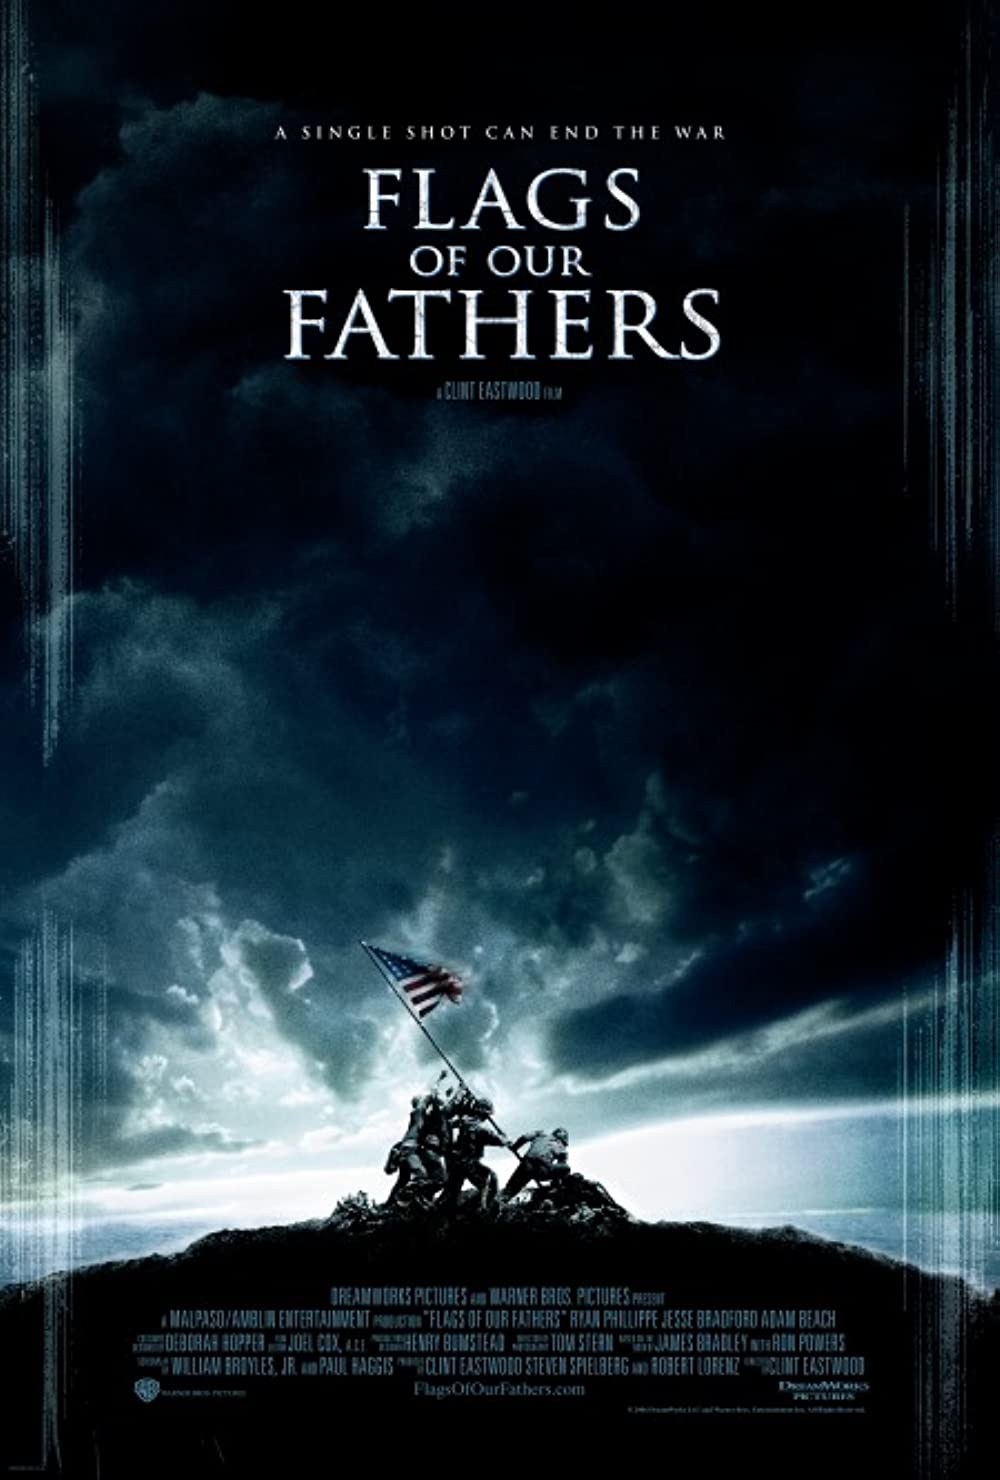 Filmbeschreibung zu Flags of Our Fathers